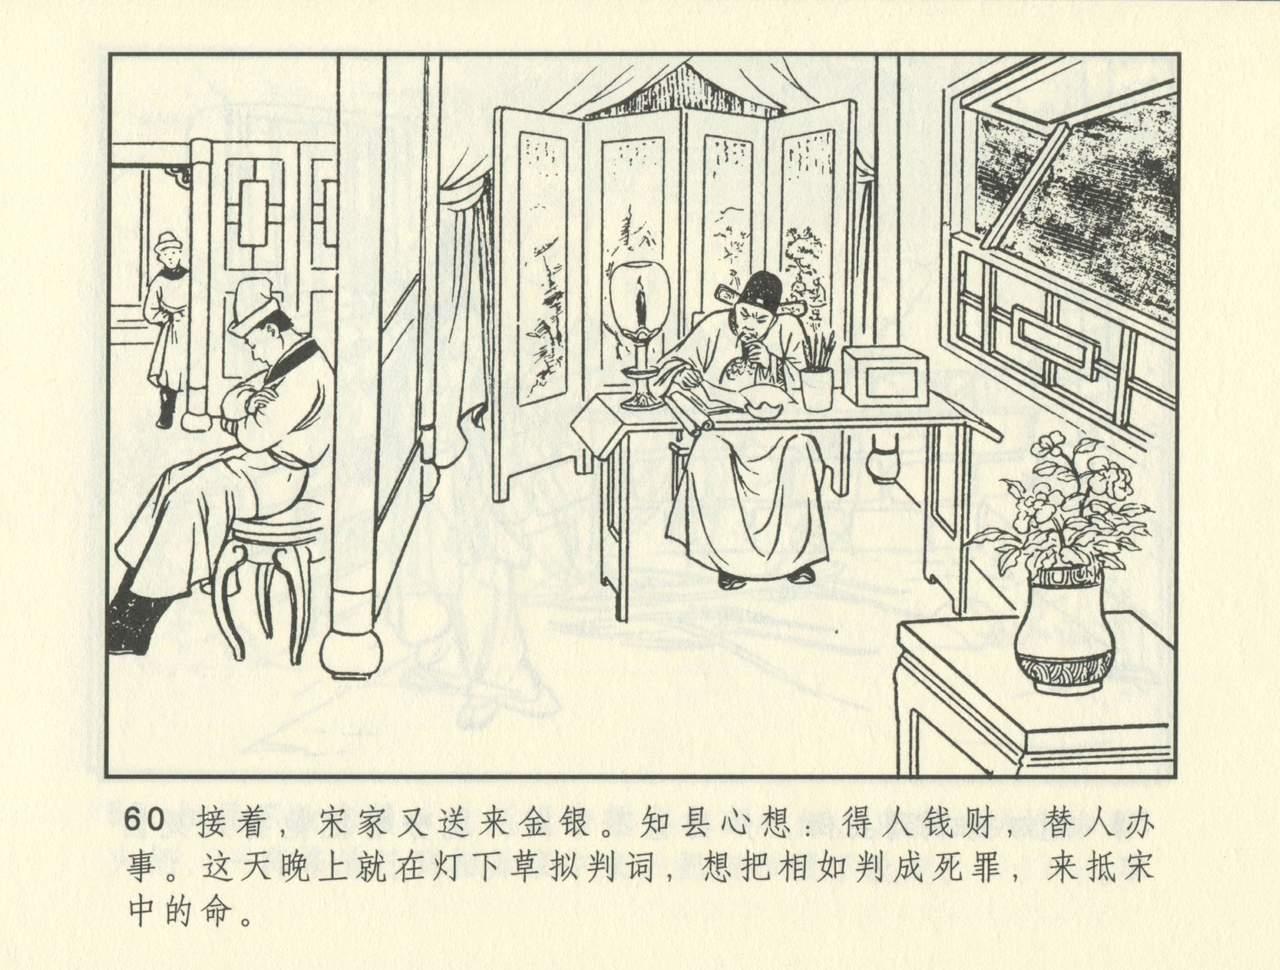 聊斋志异 张玮等绘 天津人民美术出版社 卷二十一 ~ 三十 400